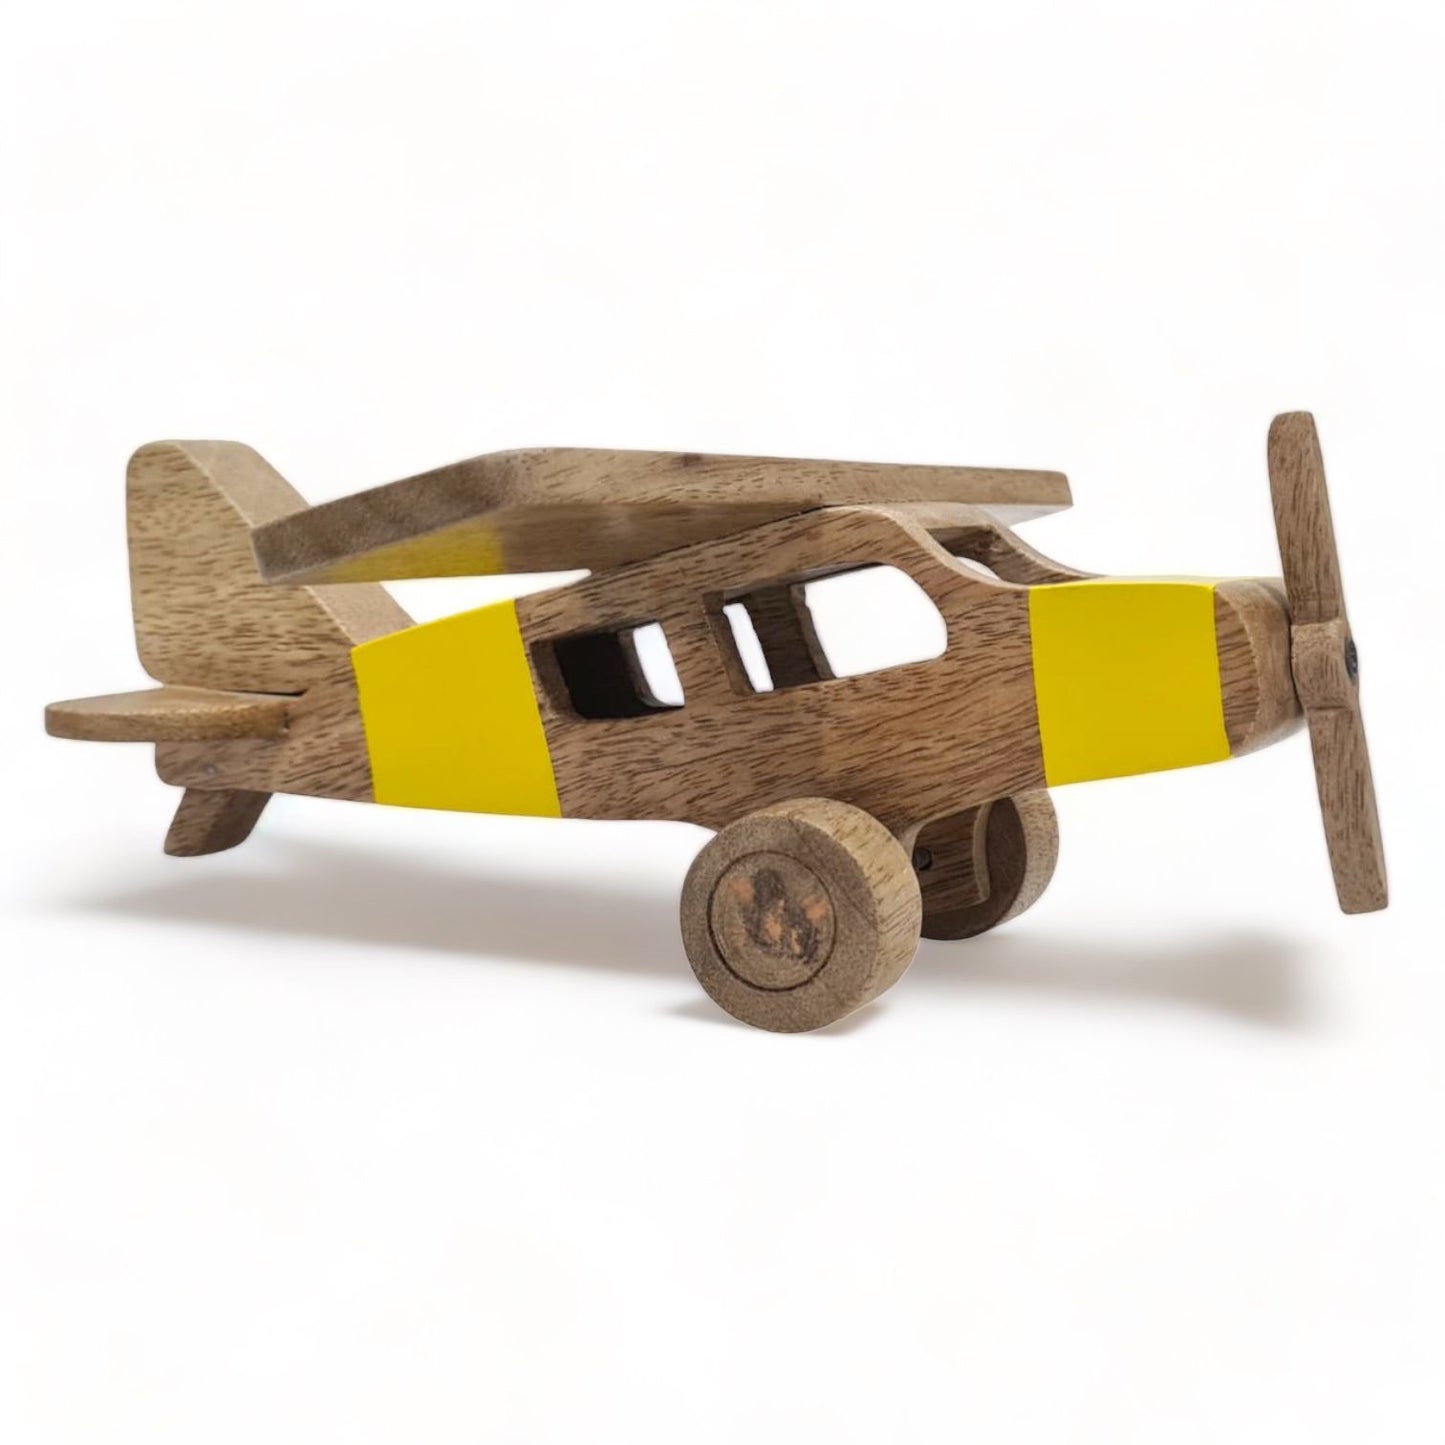 Aviation Toys